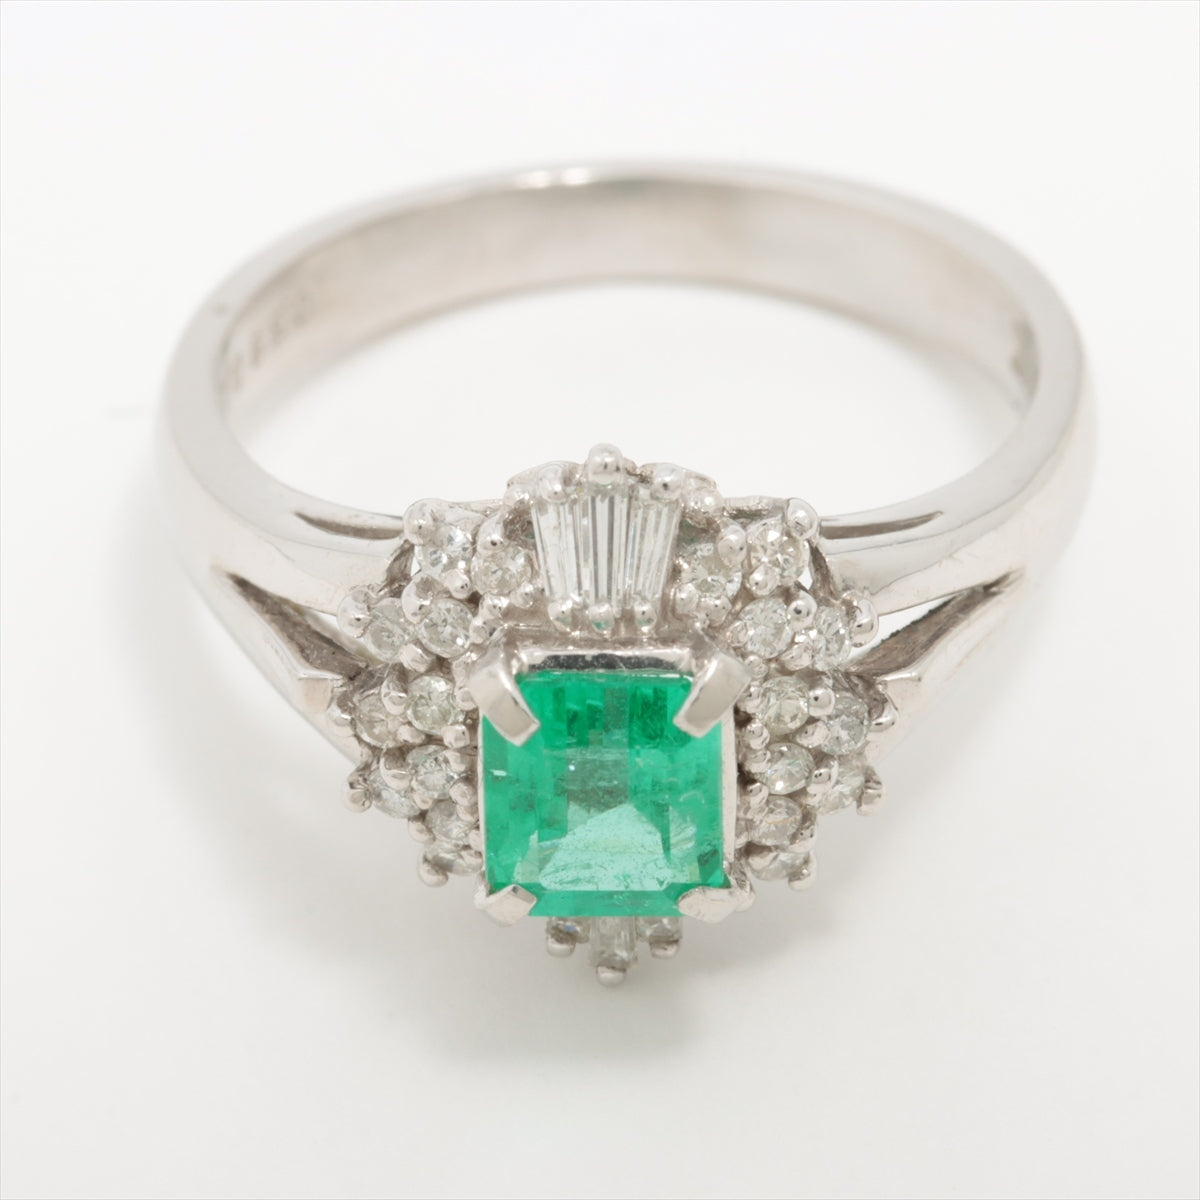 Emerald Diamond Ring Pt900 5.8g 0.59 D.26